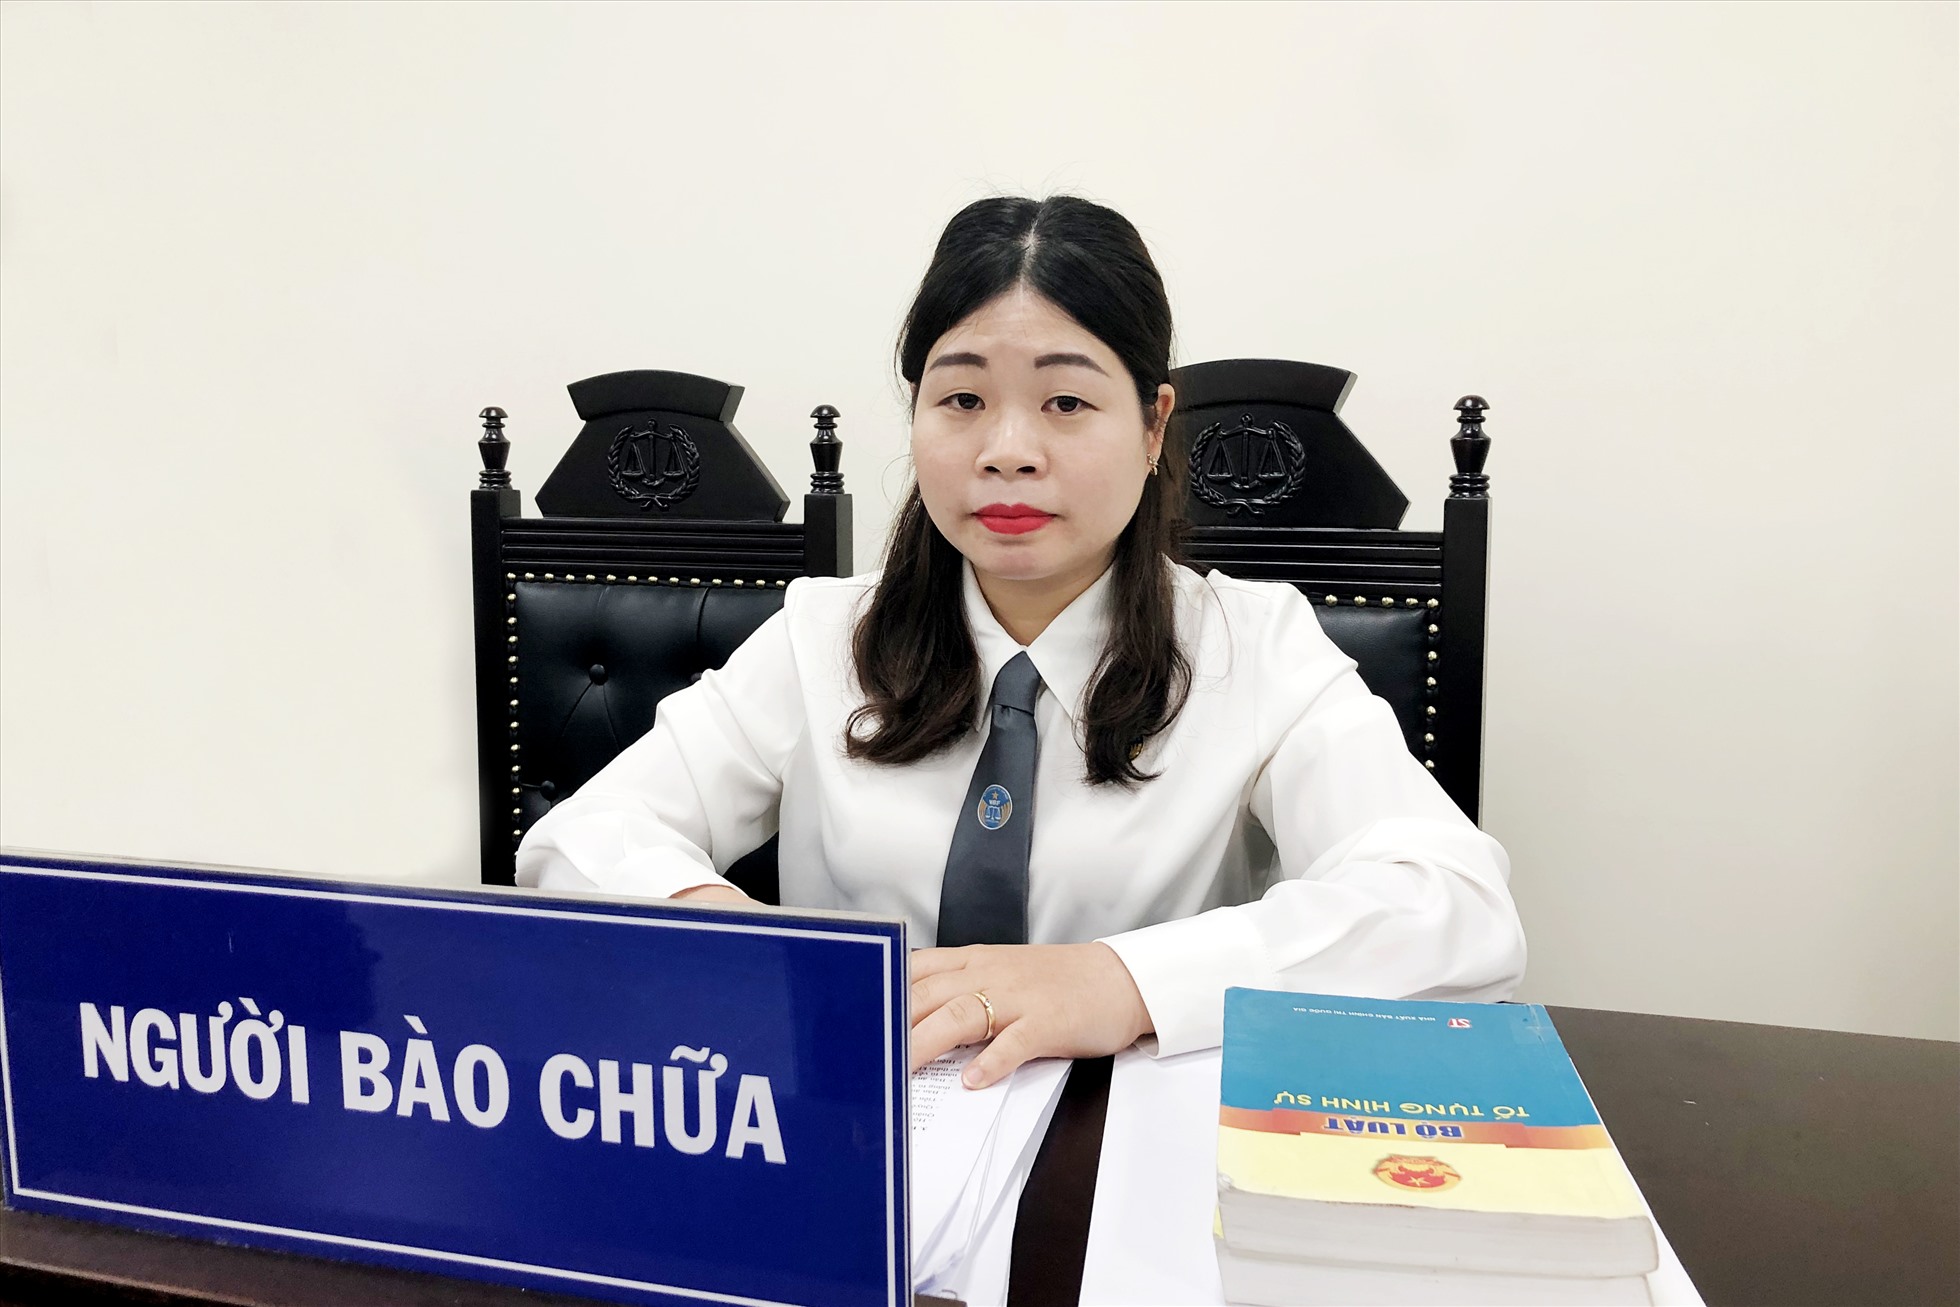 Luật sư Hà Thị Khuyên chia sẻ góc nhìn pháp lý về các vụ án. Ảnh: Nhân vật cung cấp